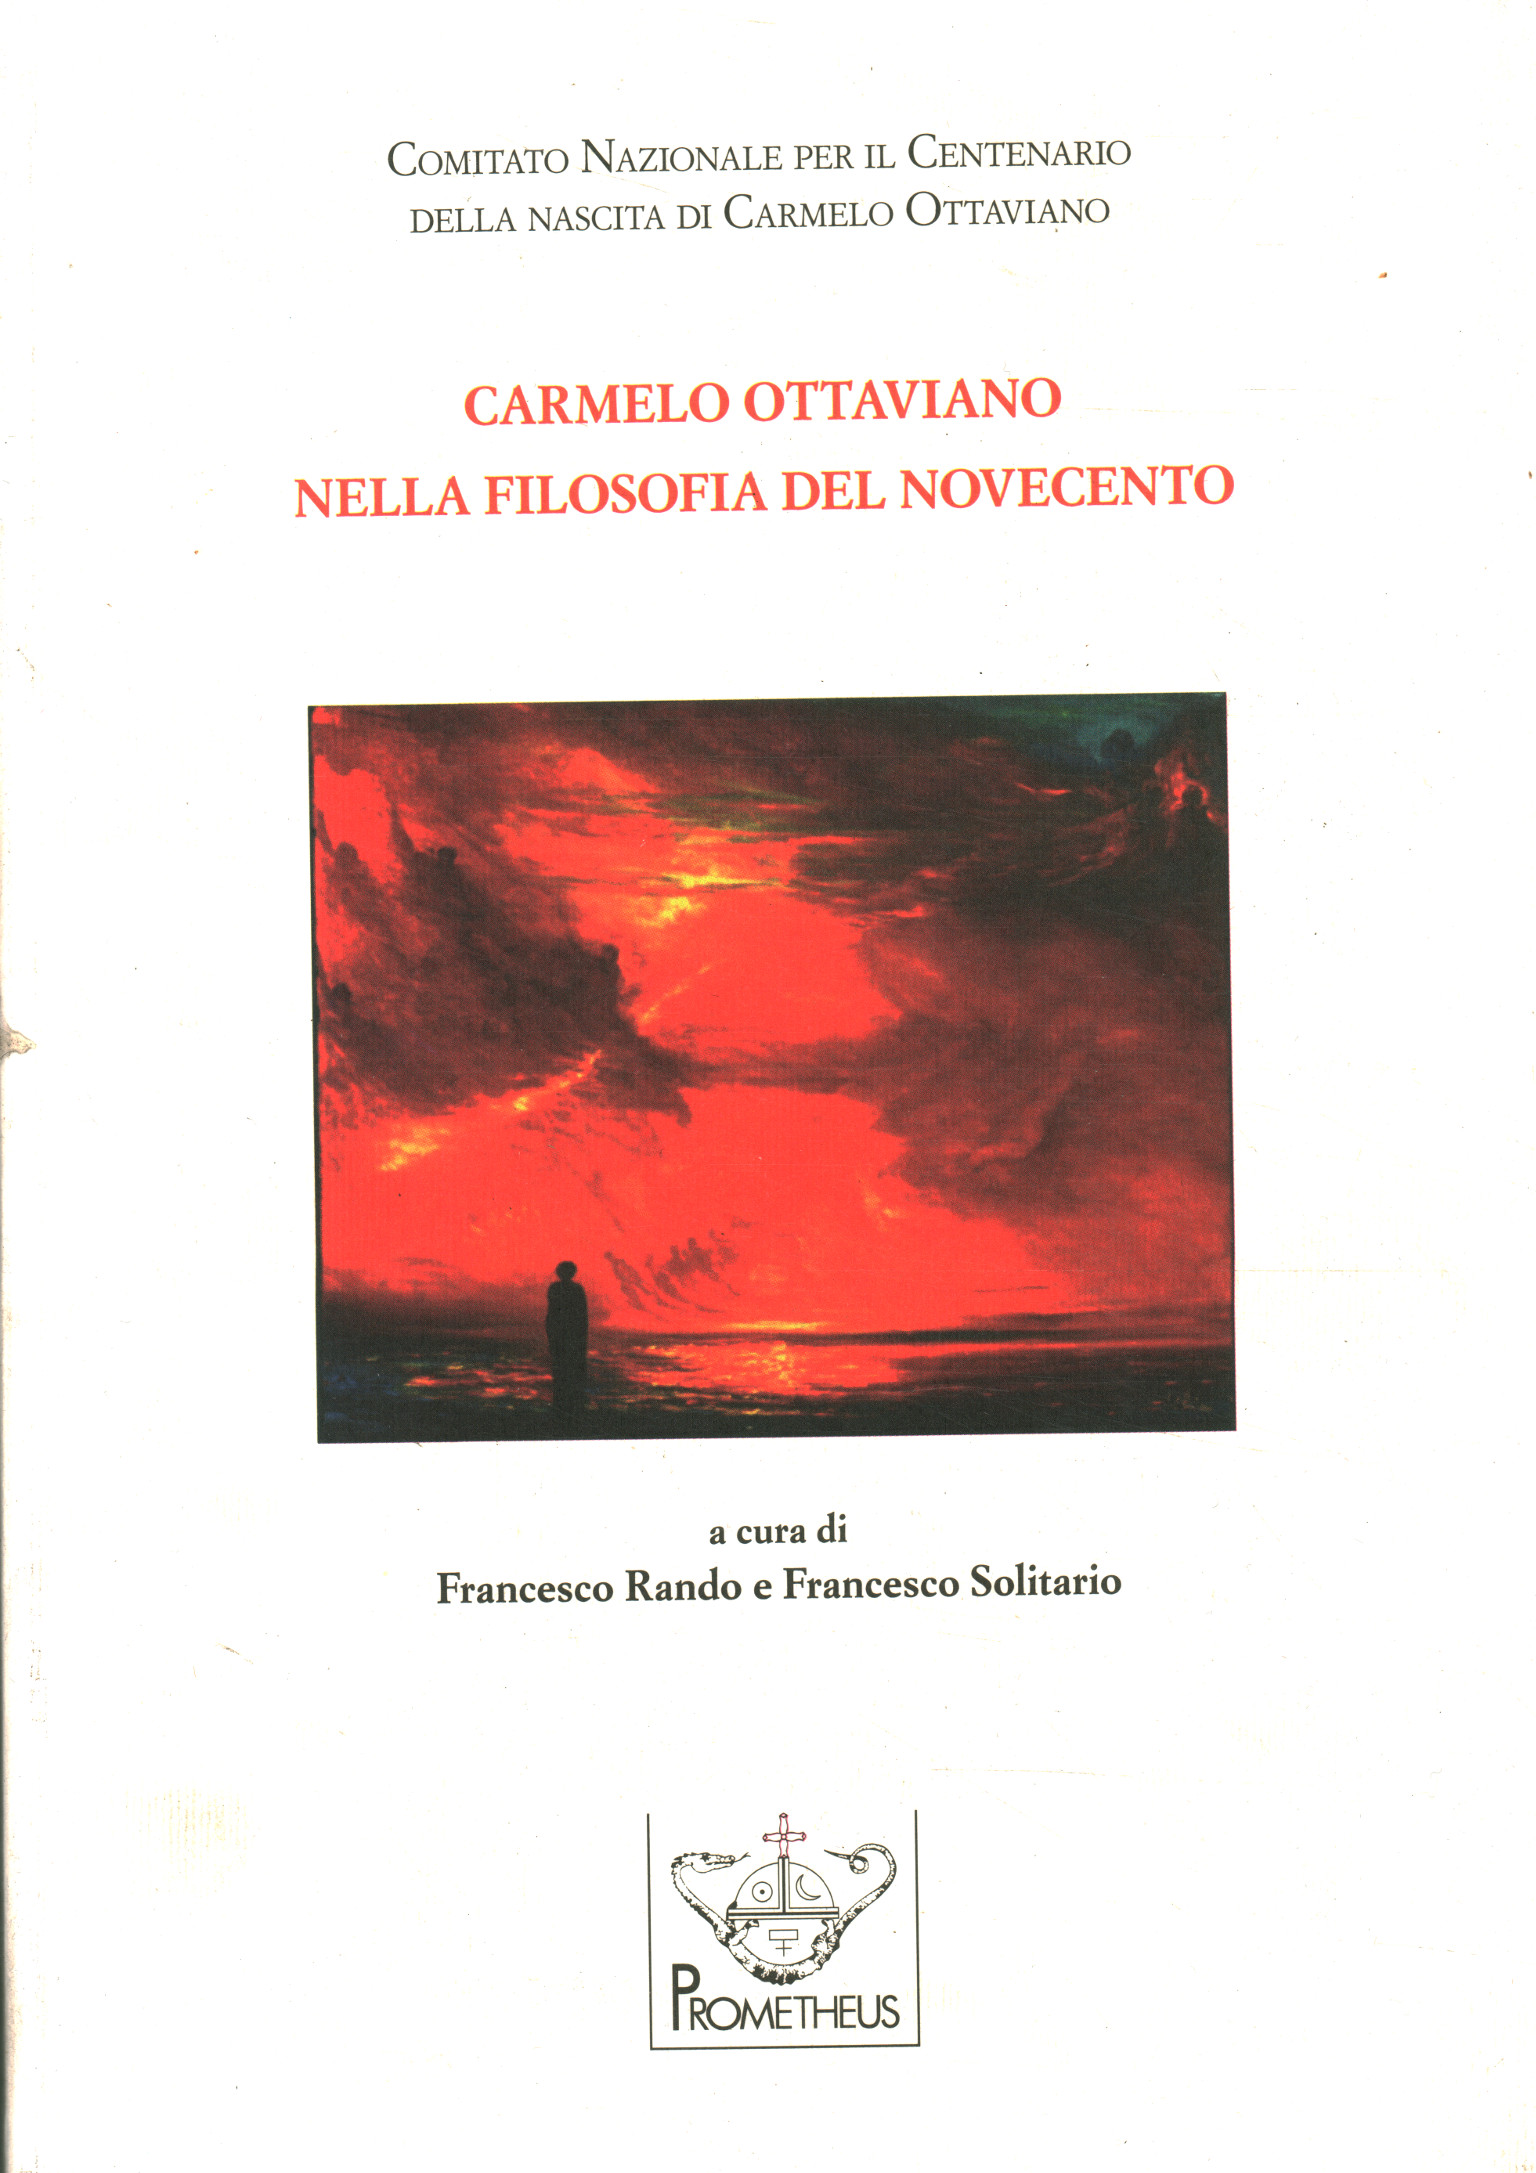 Carmelo Ottaviano en la filosofía del No